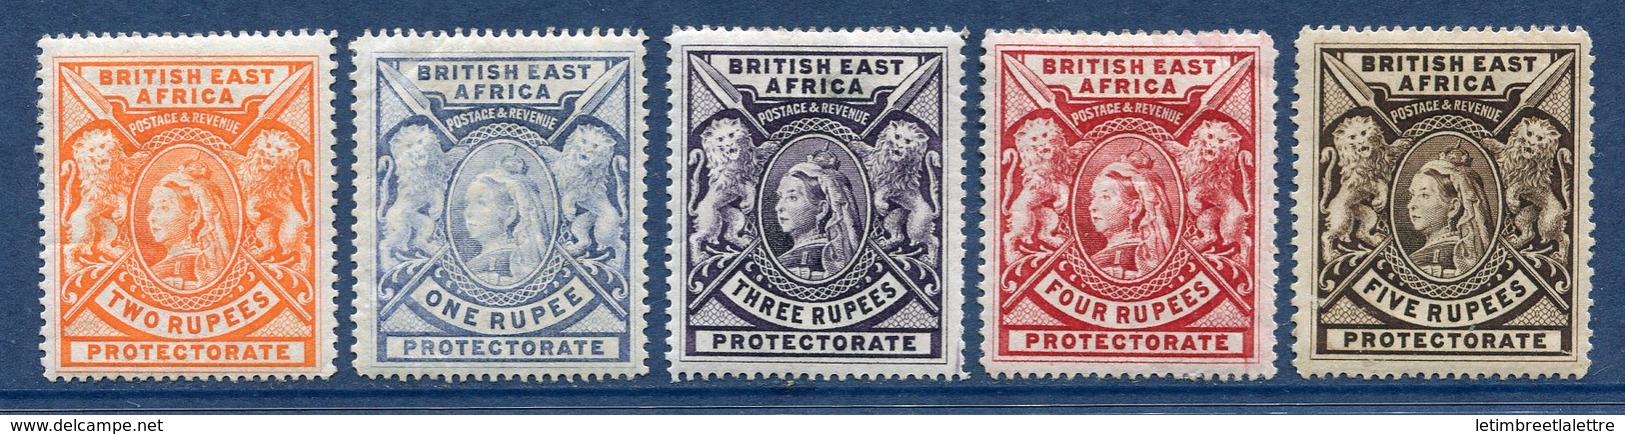 ⭐ Afrique Orientale Britannique - YT N° 76 à 80 * - Neuf Avec Charnière ⭐ - Britisch-Ostafrika